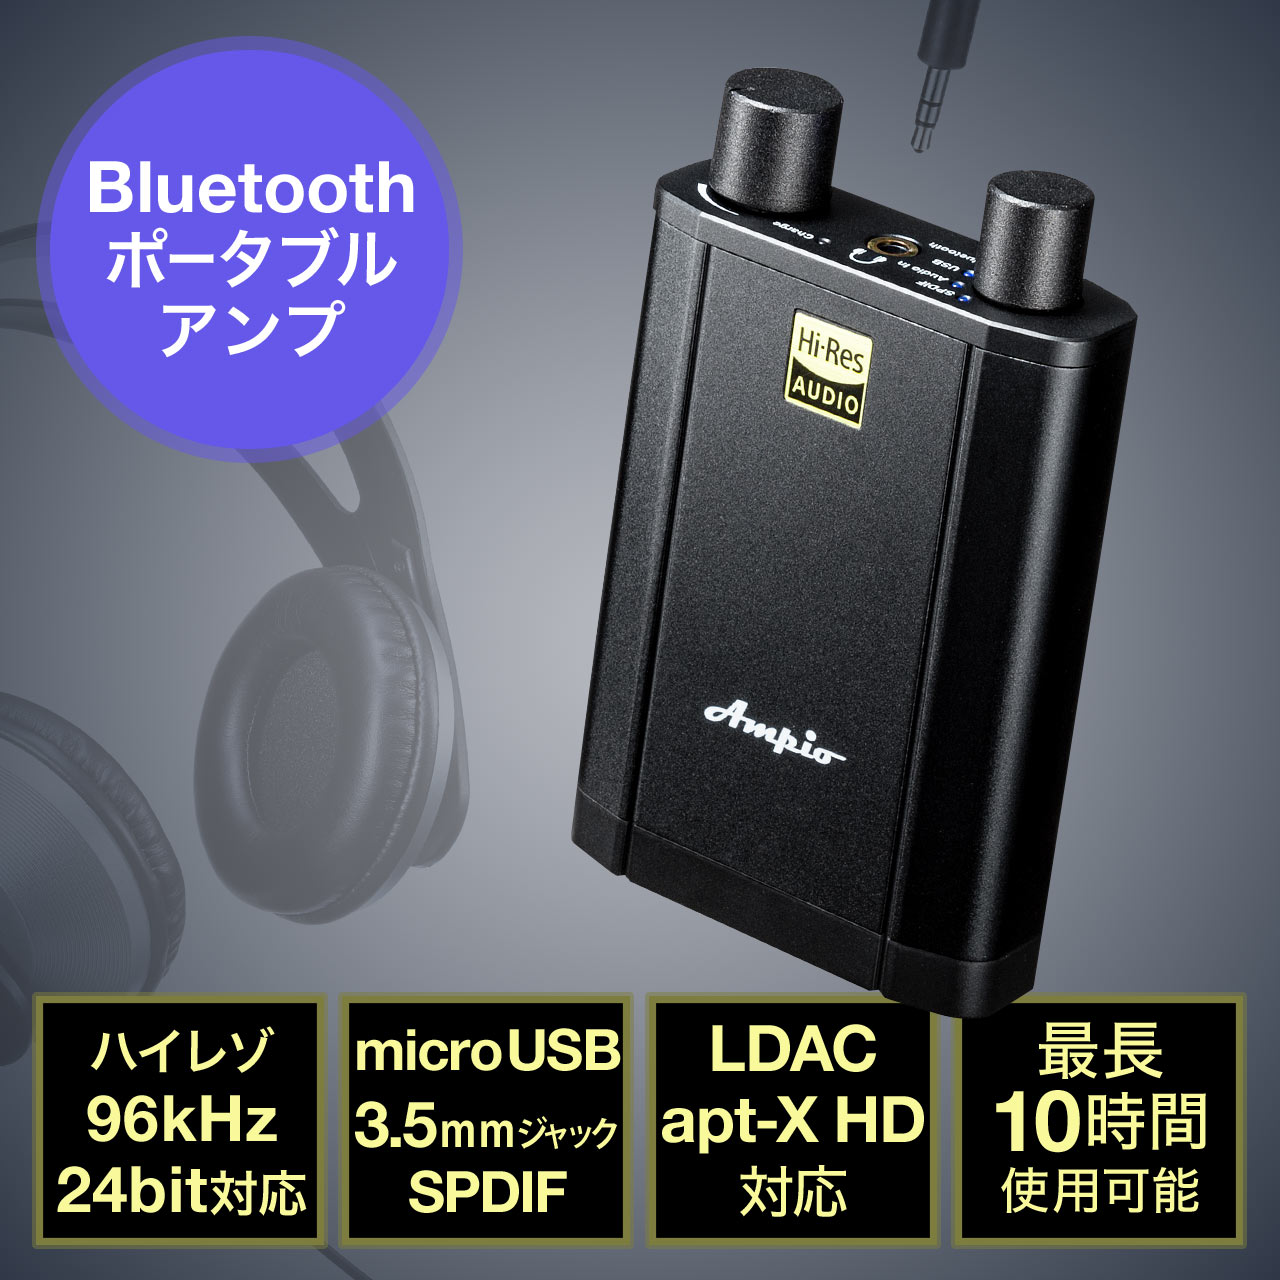 【送料込み】動画再生可能 防水ブルートゥースアンプ Bluetoothアンプ